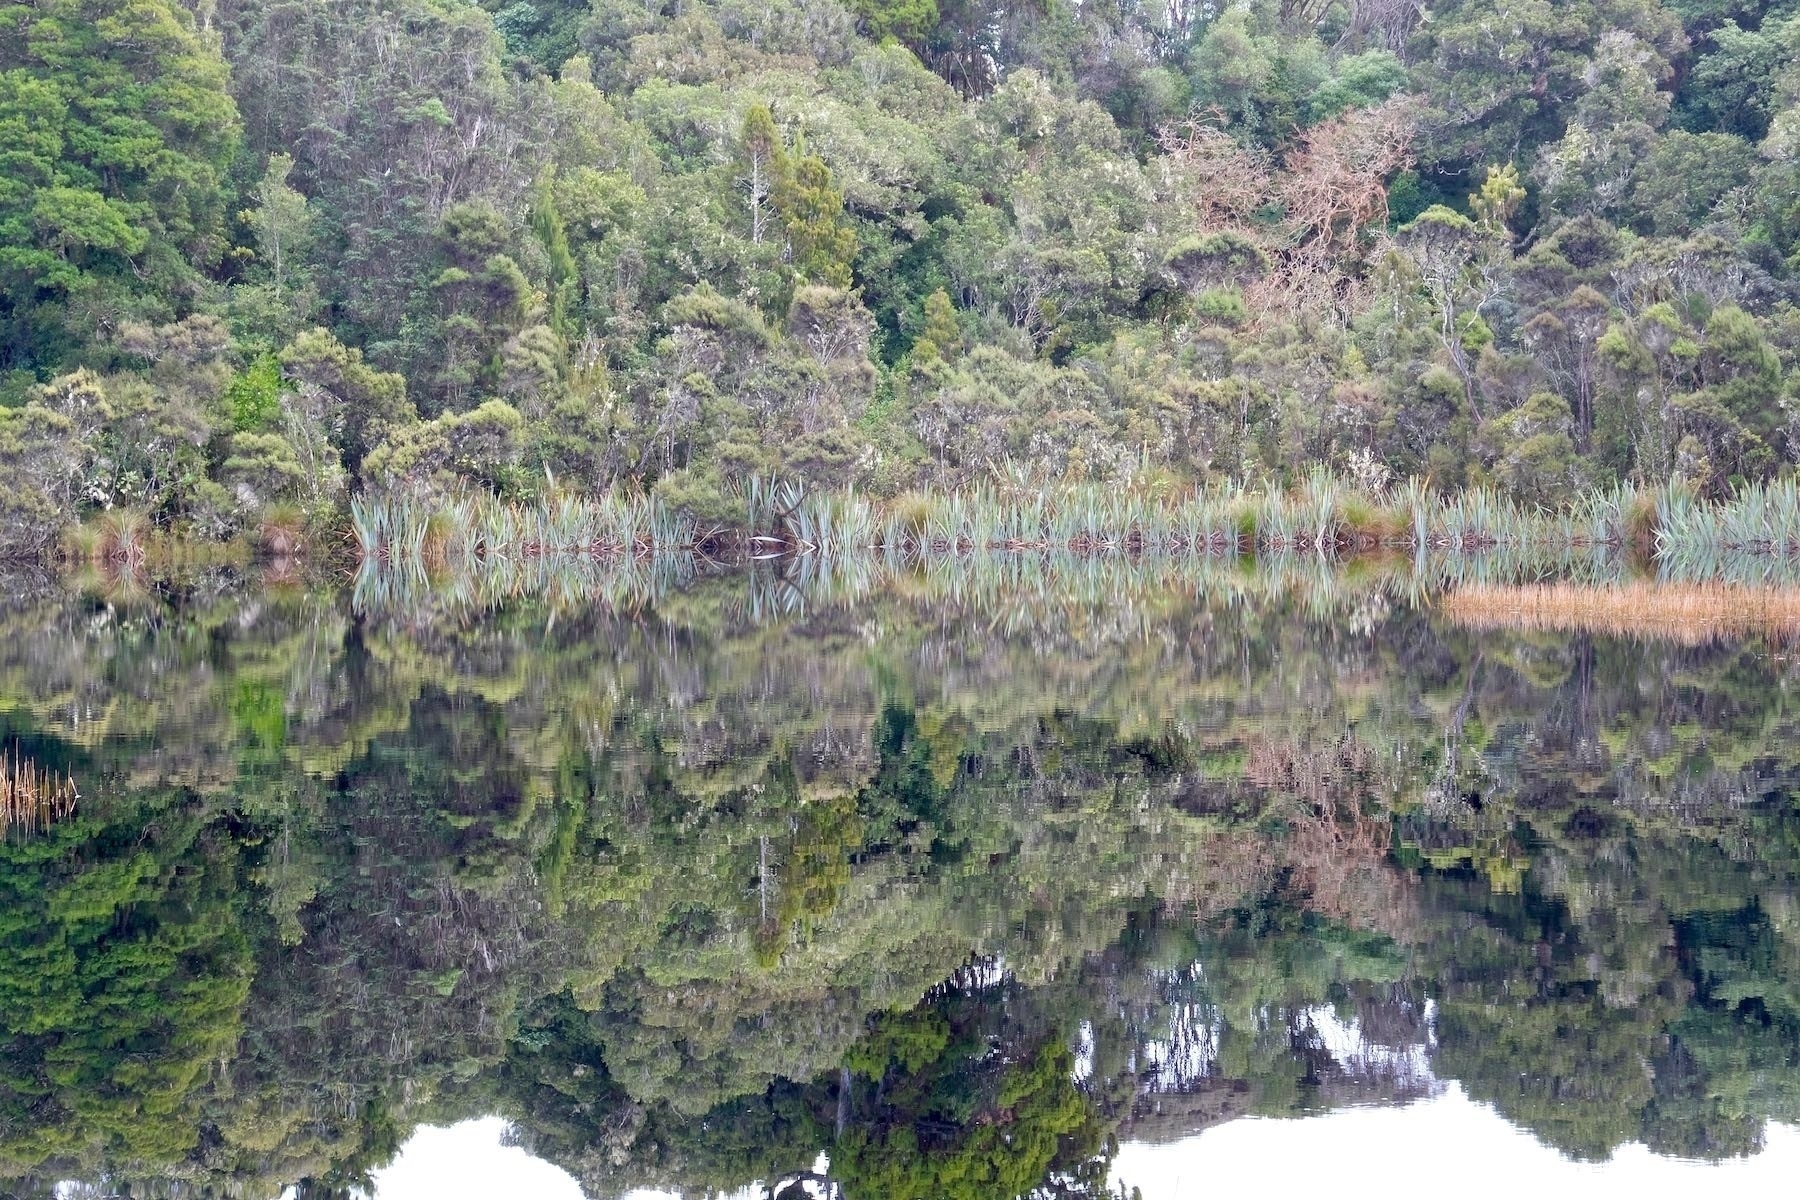 Lake edge vegetation reflected perfectly. 